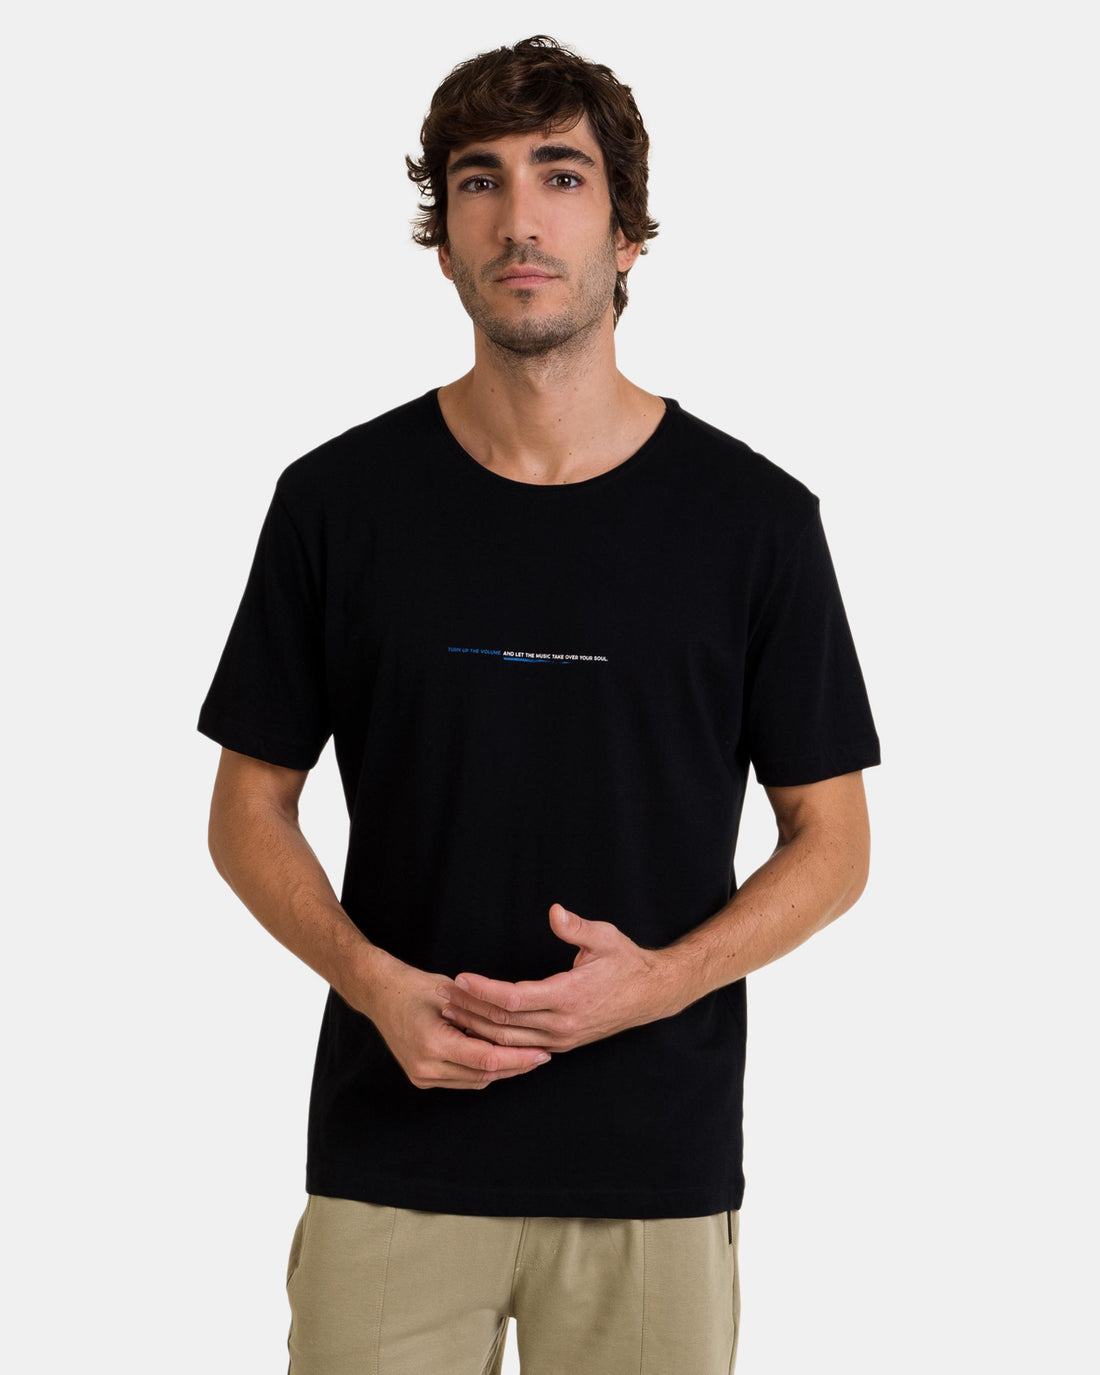 Camiseta Básica Massana Negro